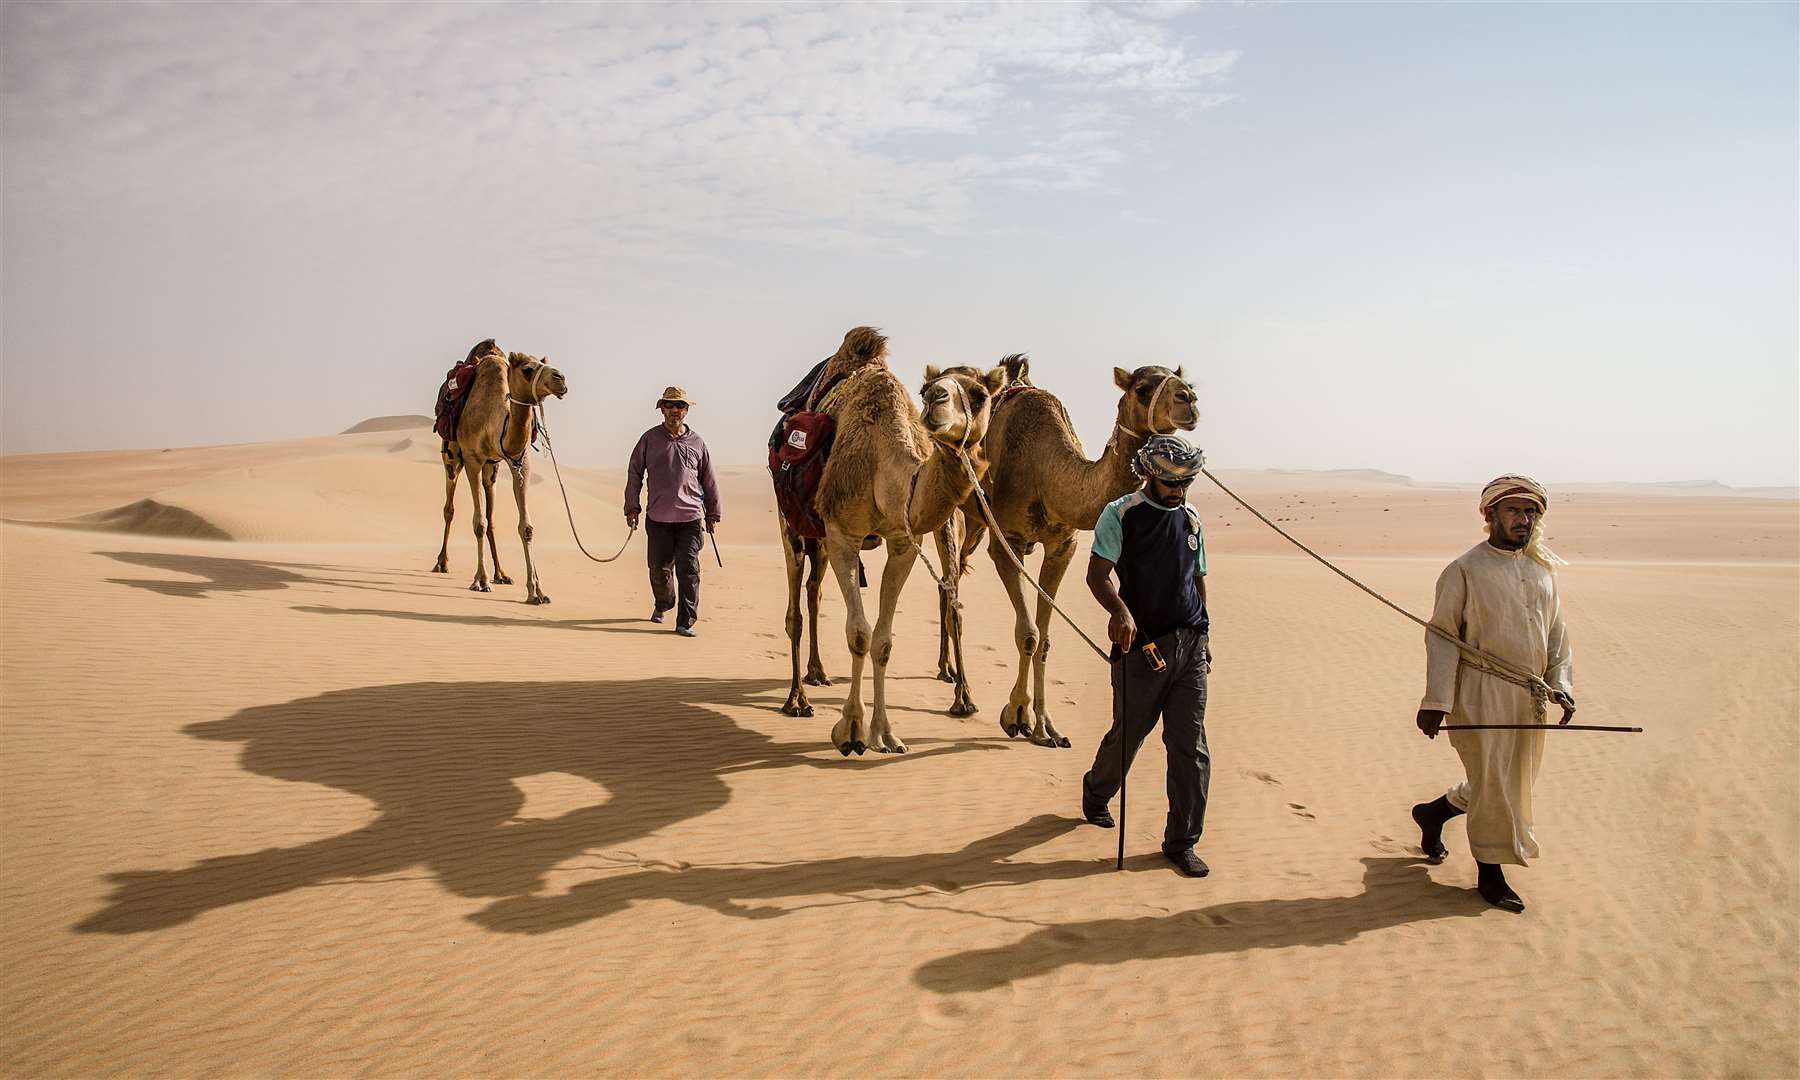 Mark Evans journeyed across the biggest sand desert on earth, the Empty Quarter.